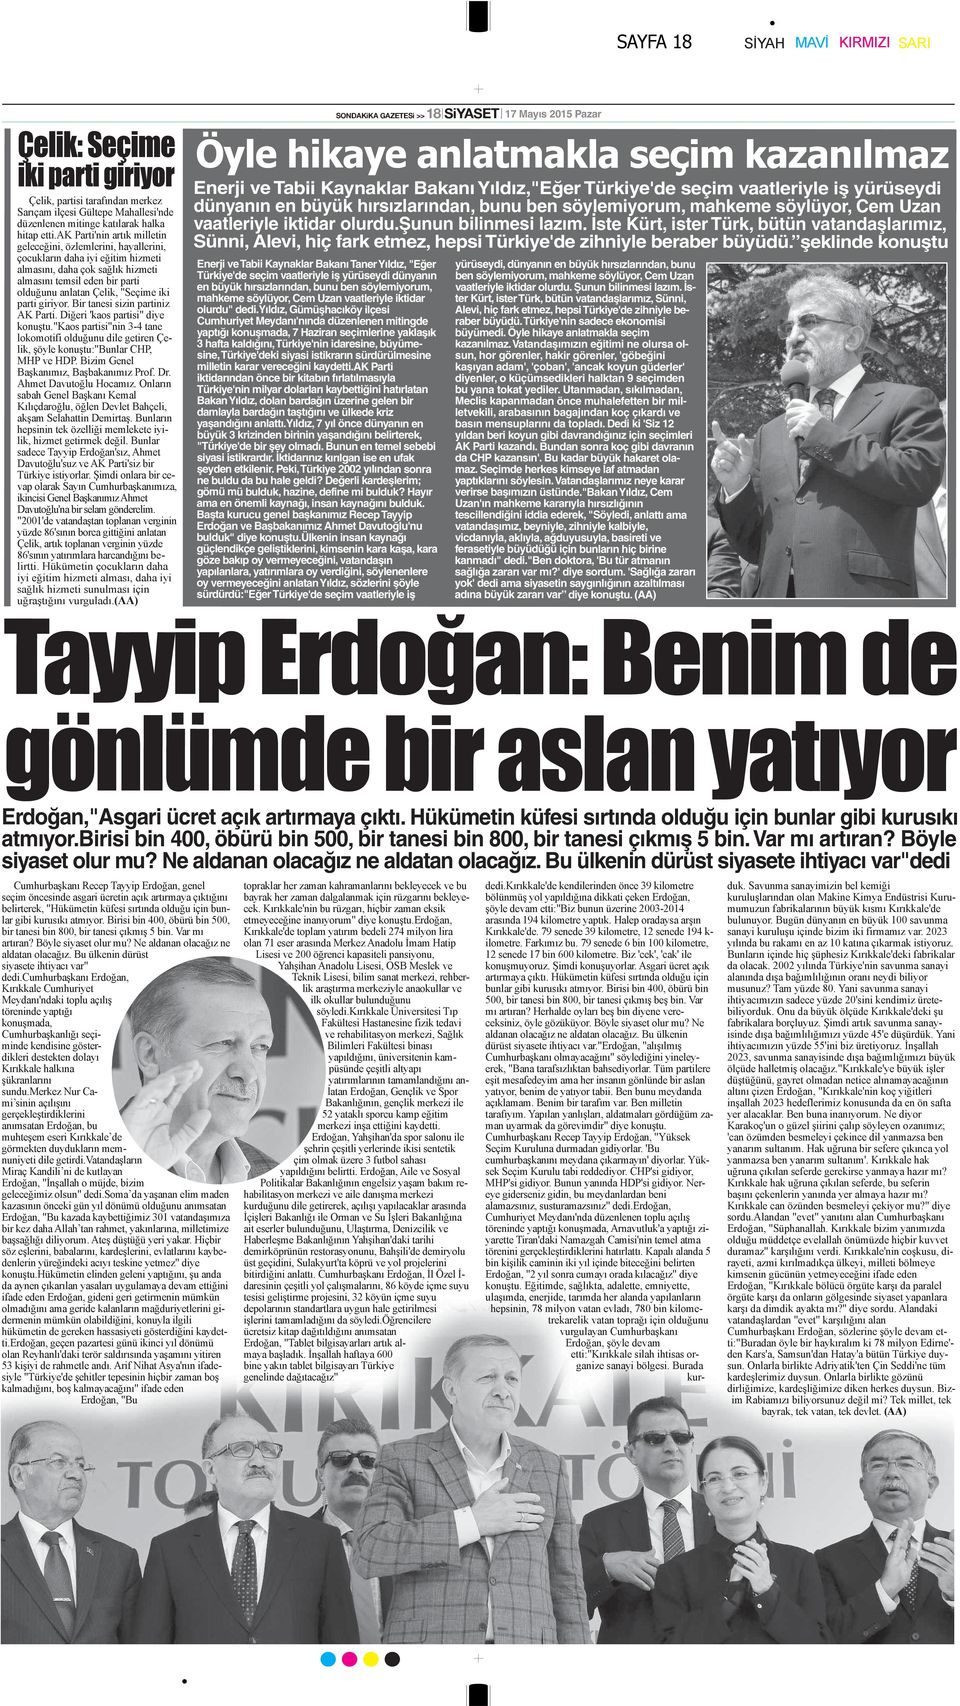 şeklinde konuştu Enerji ve Tabii Kaynaklar Bakanı Taner Yıldız, "Eğer Türkiye'de seçim vaatleriyle iş yürüseydi dünyanın en büyük hırsızlarından, bunu ben söylemiyorum, mahkeme söylüyor, Cem Uzan